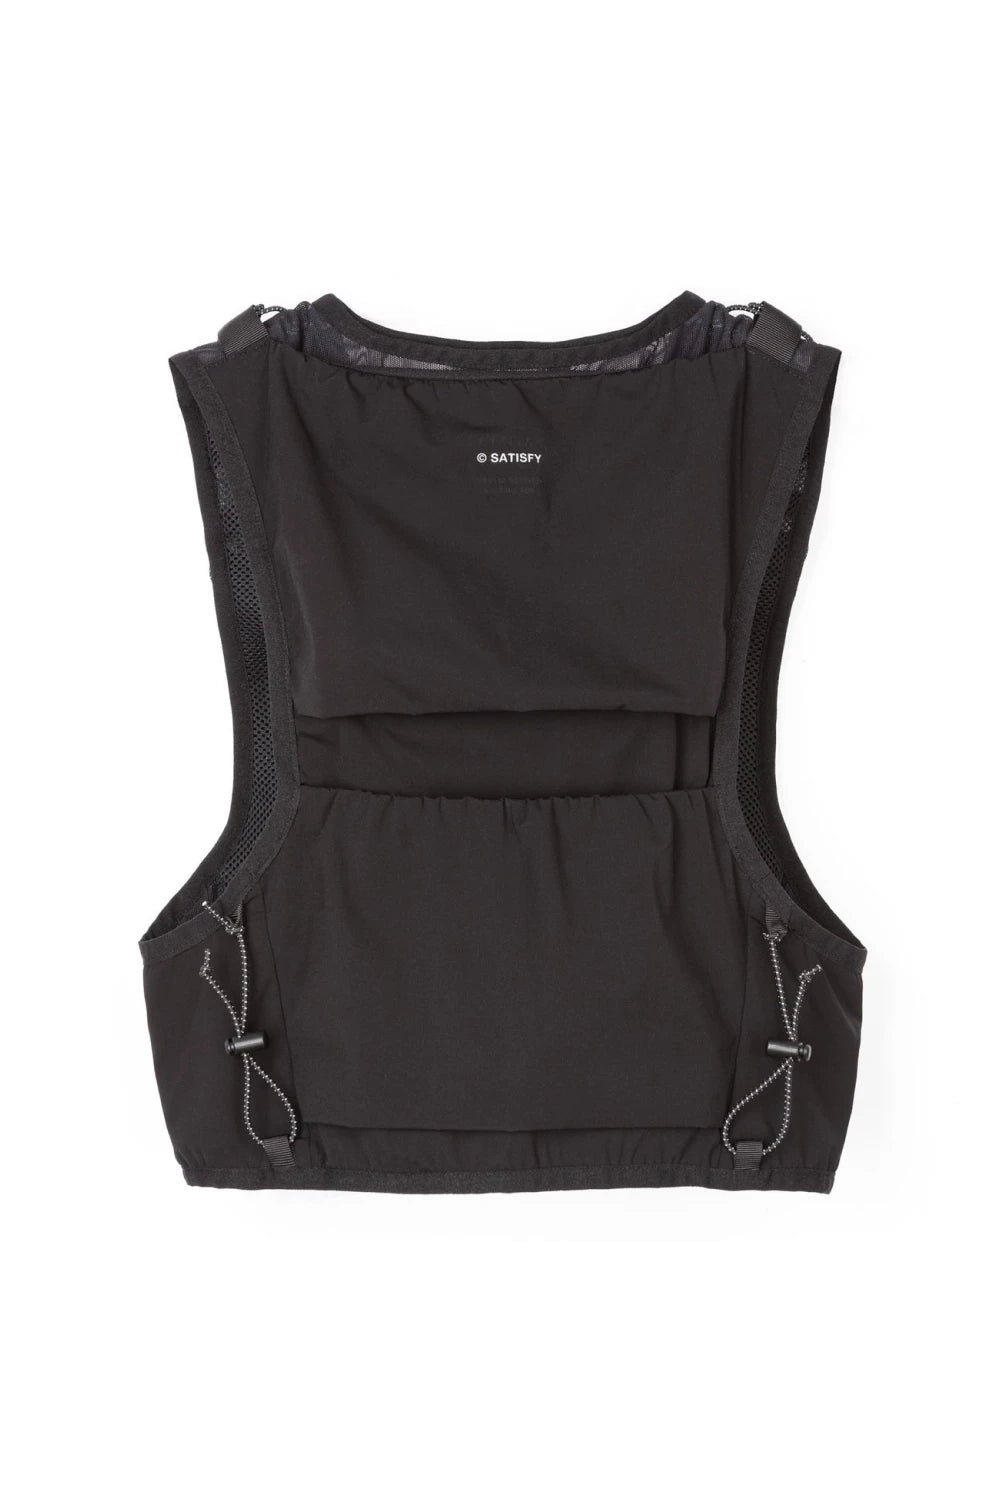 Satisfy Justice™ Cordura® 5L Hydration Vest - Black